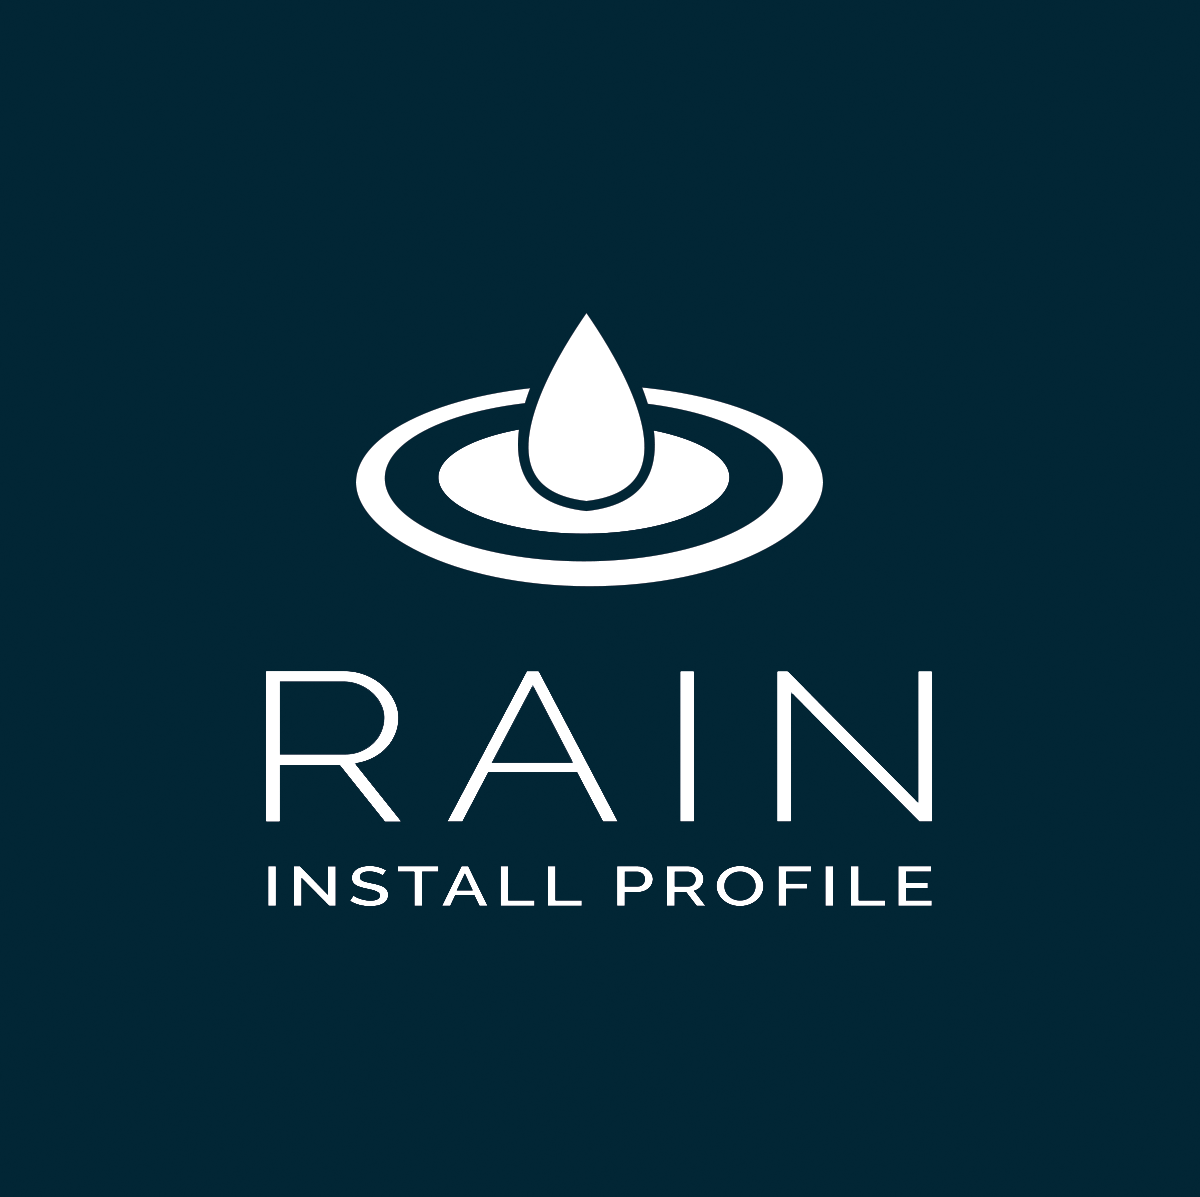 Rain logo updated